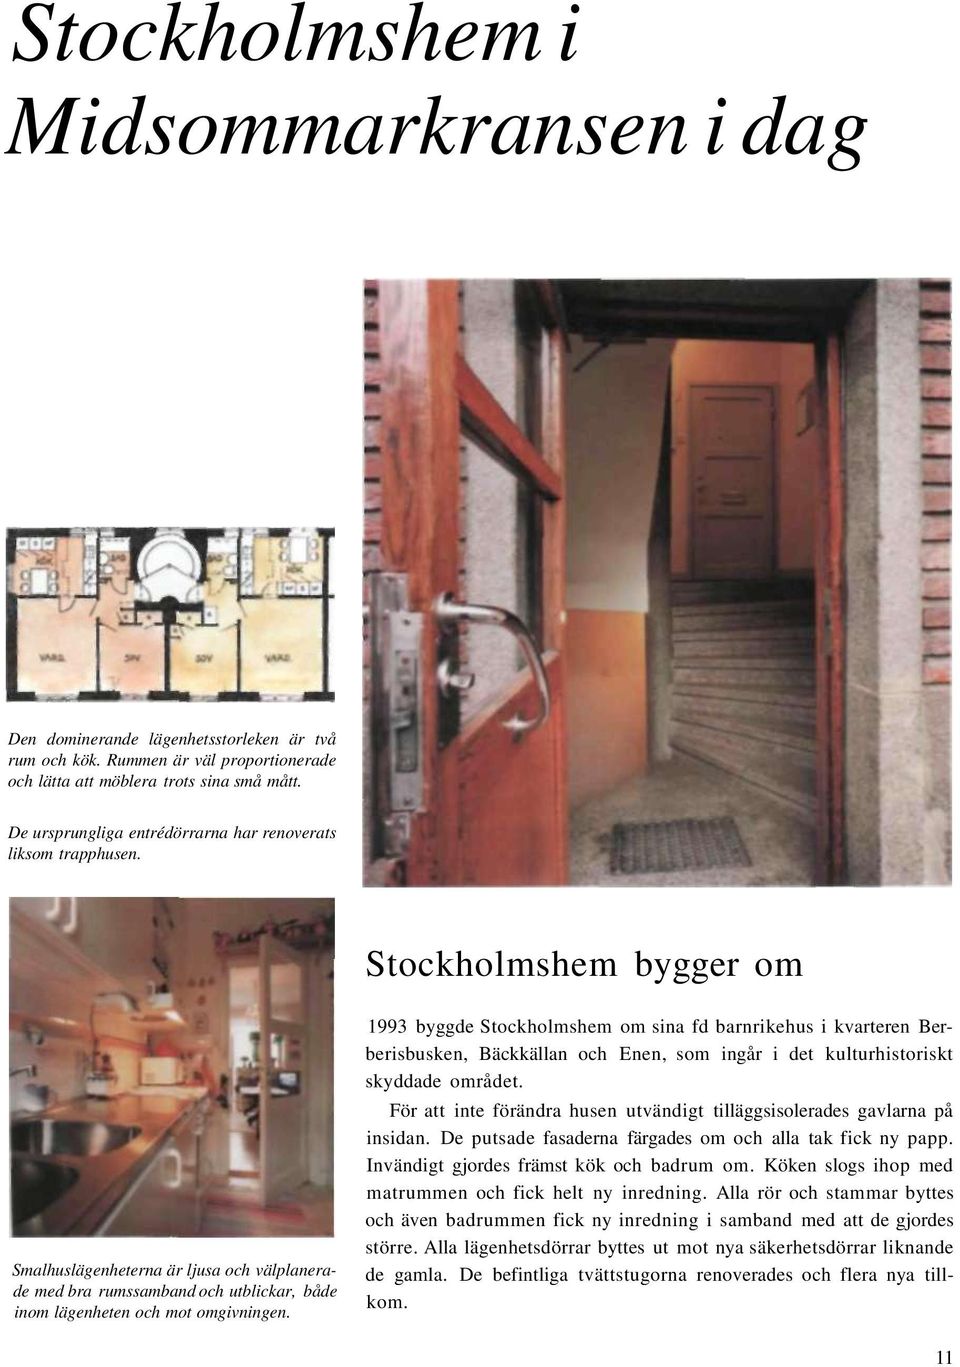 Stockholmshem bygger om Smalhuslägenheterna är ljusa och välplanerade med bra rumssamband och utblickar, både inom lägenheten och mot omgivningen.